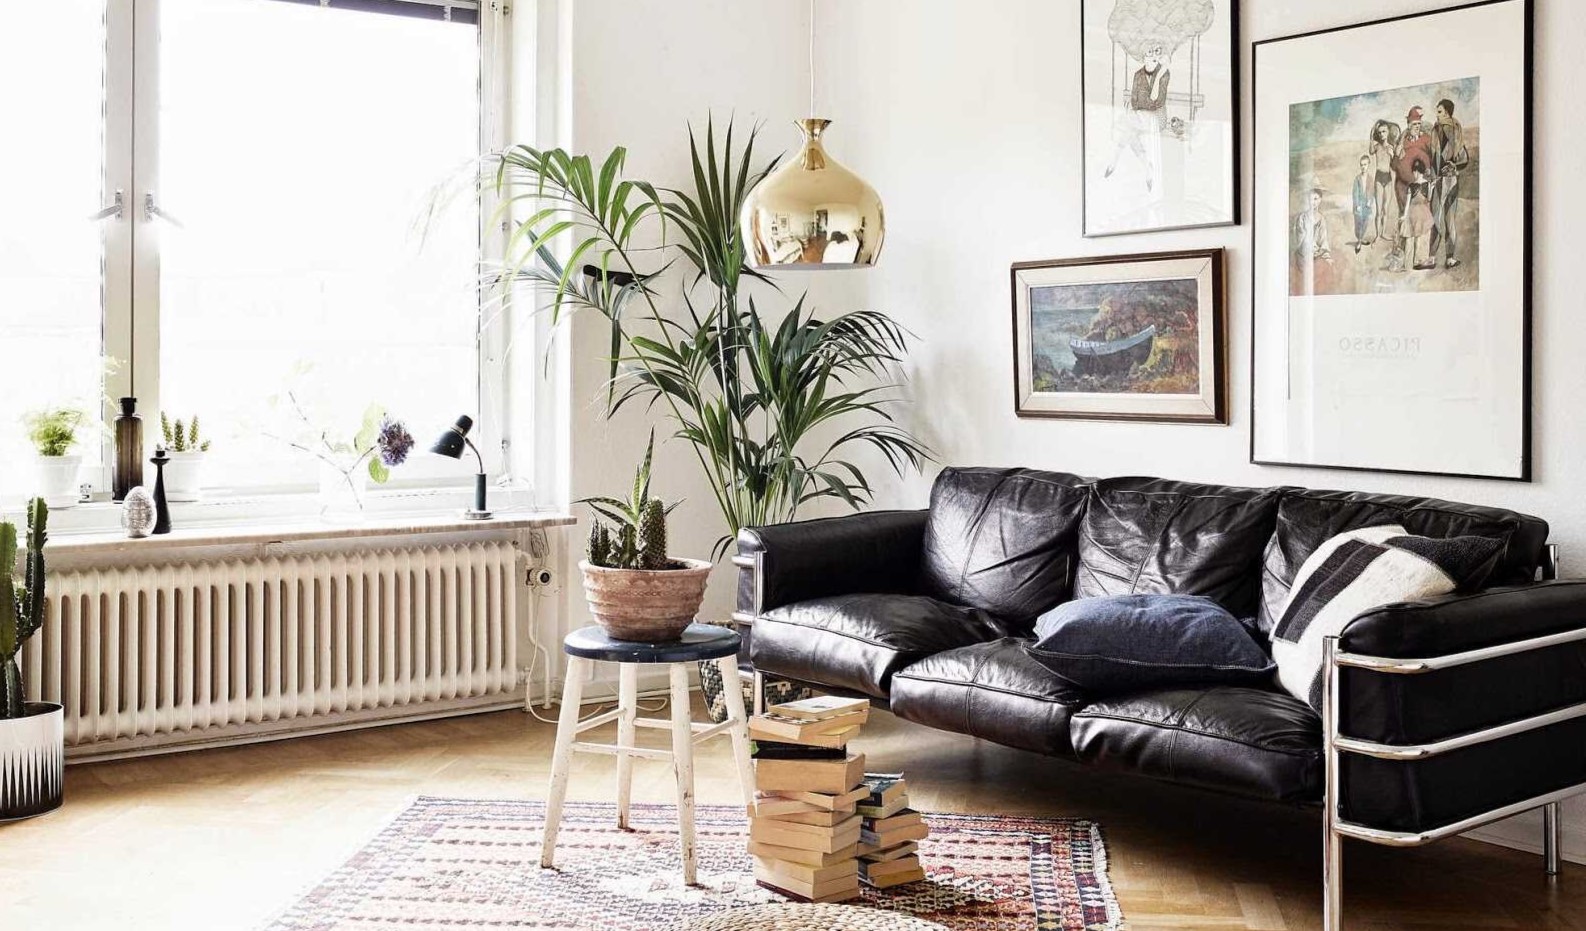 Черный кожаный диван стильно смотрится в интерьере светлой комнаты